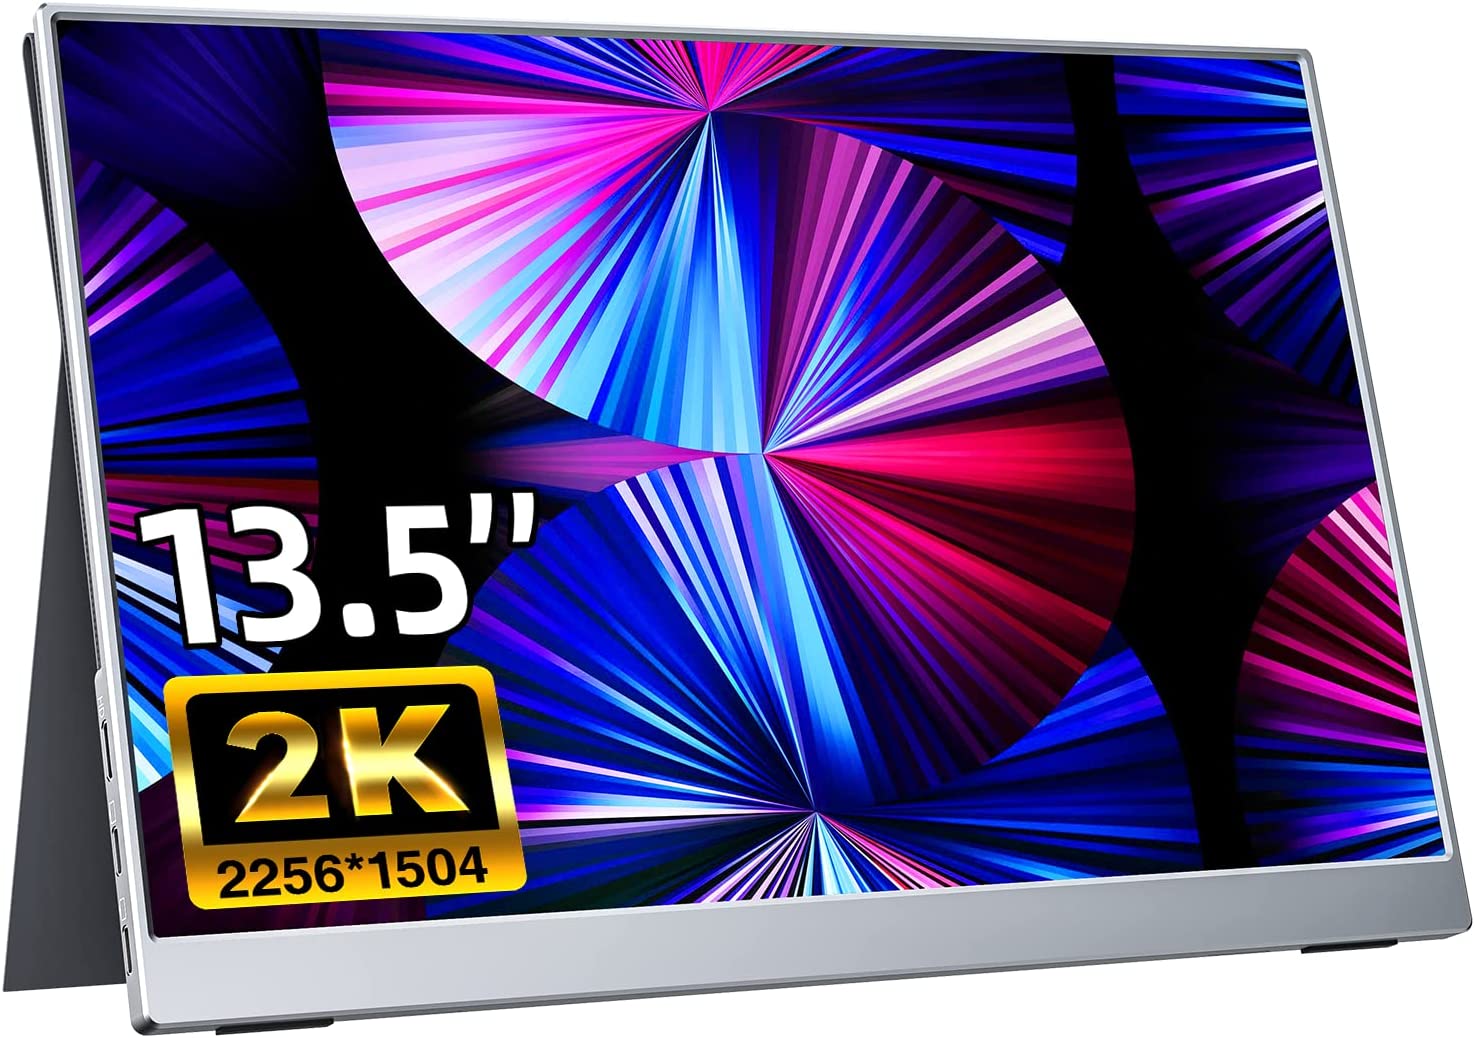 モバイルモニター kksmart 13.5インチ 超薄型 超軽量380g 狭額縁 400nits高輝度 100%sRGB色域 画像比自動適合 モバイルディスプレイ HDRモード対応 保護カバー付き 非光沢IPSパネル 2K解像度 2…